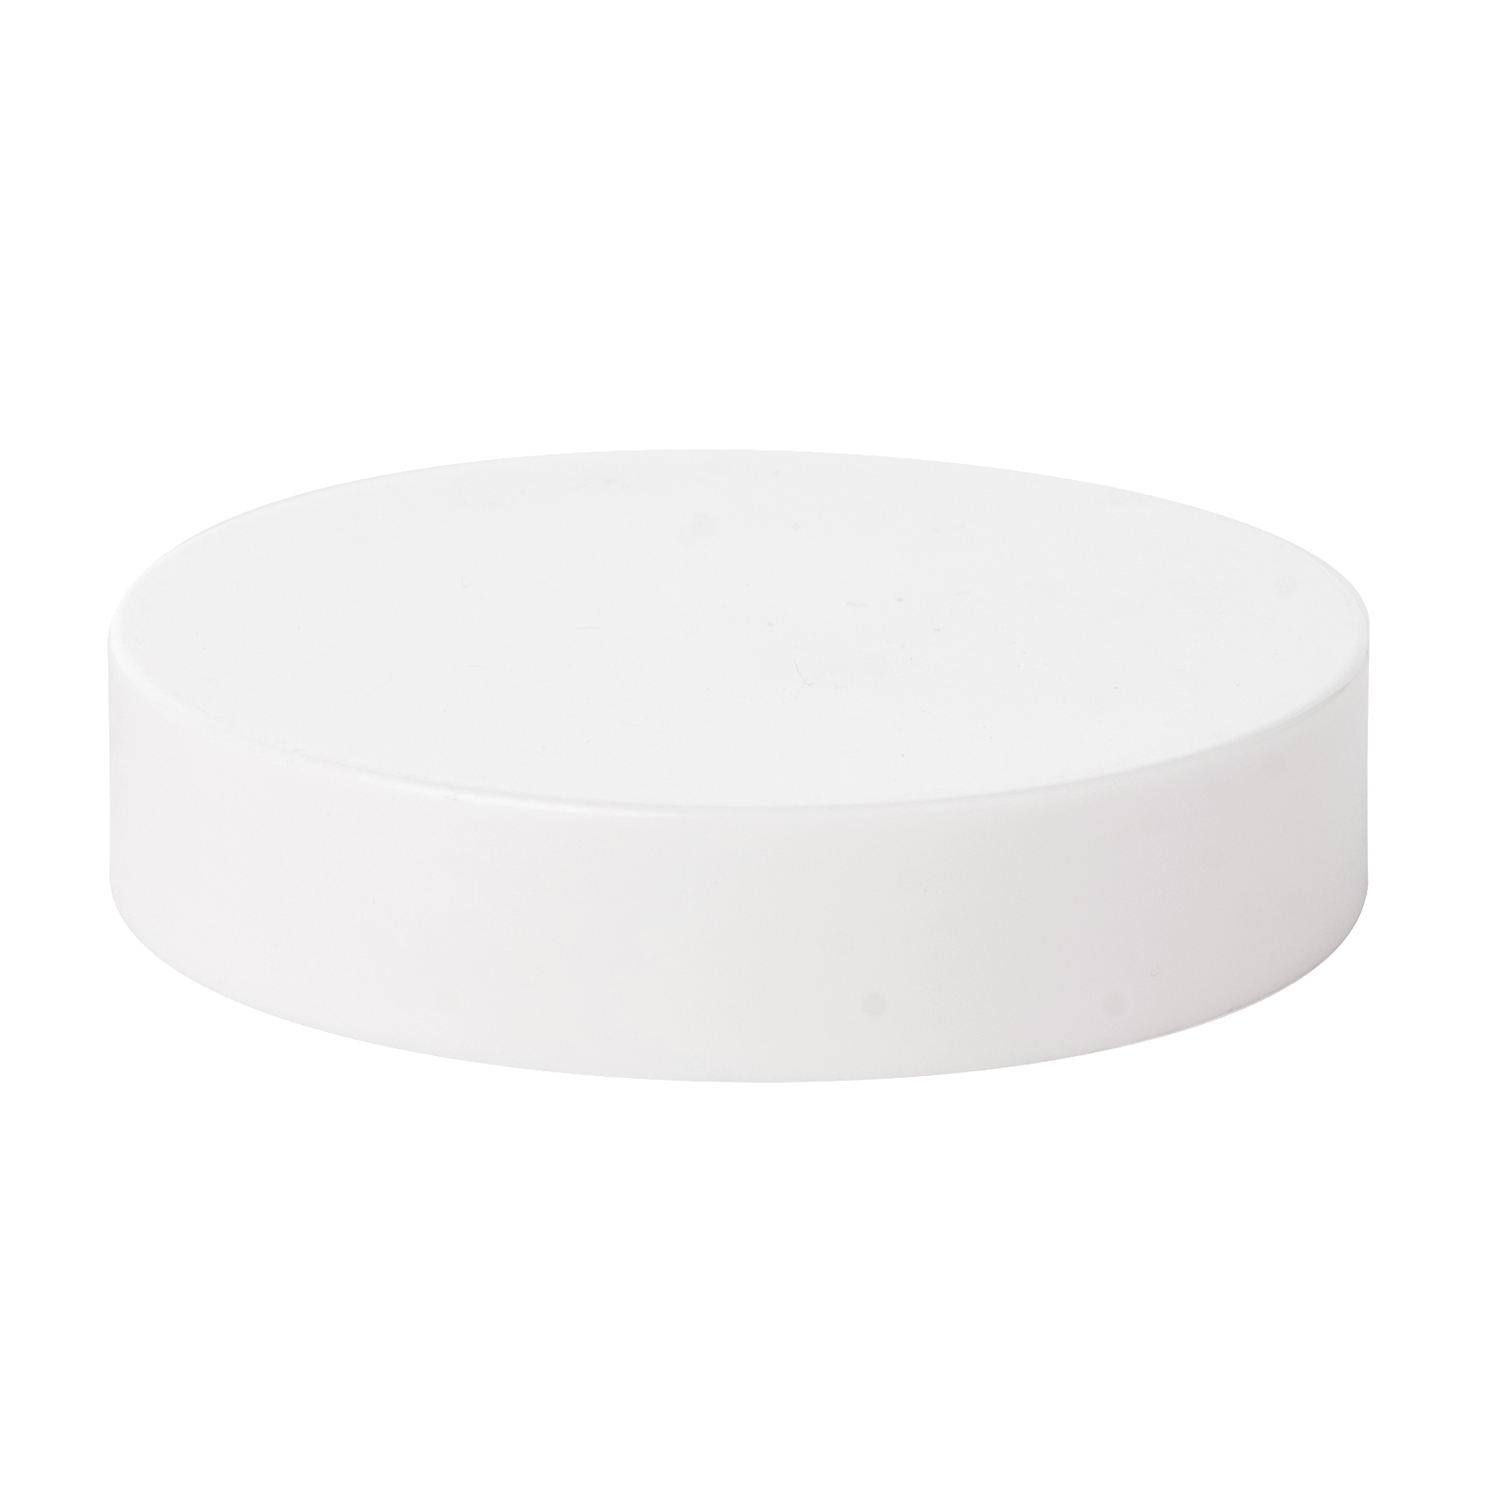 150g 236g Cylindrical PET Jar High Quality Cream Jar Cosmetic Jar